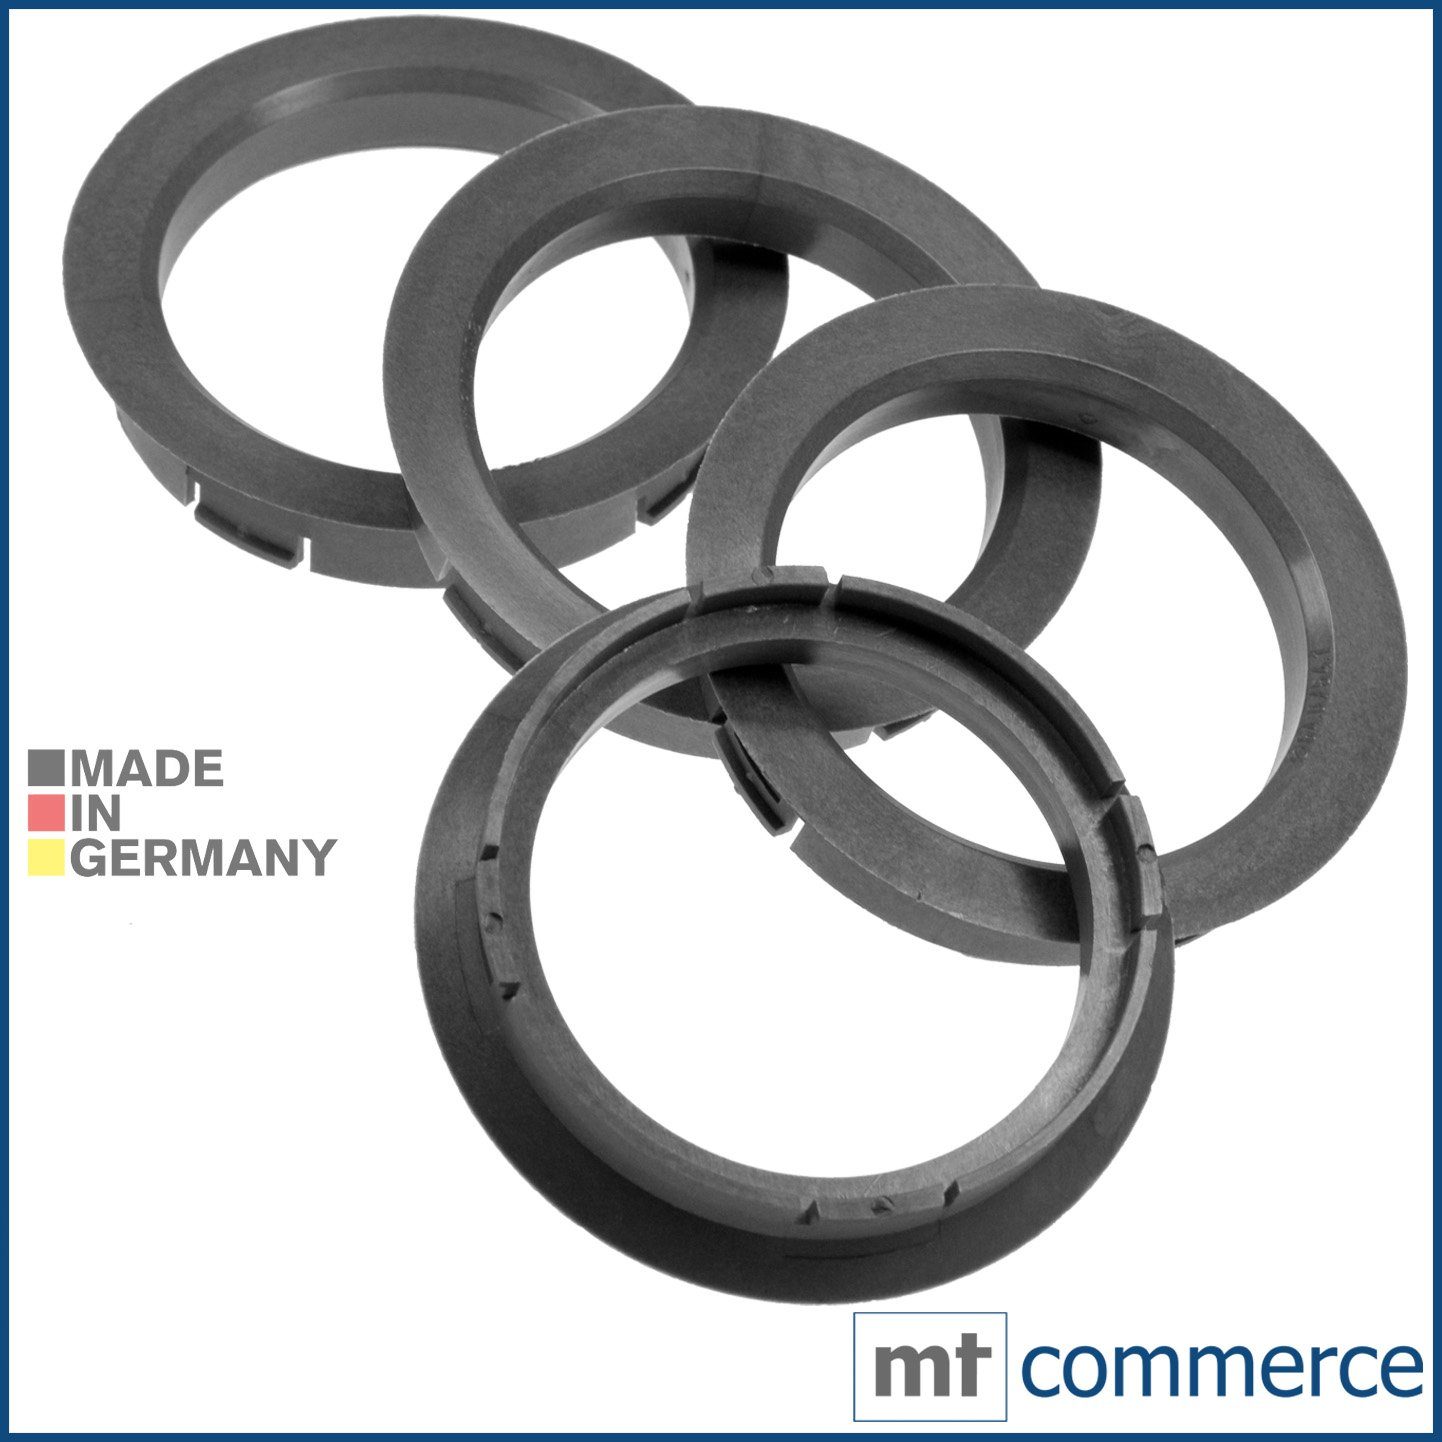 RKC Reifenstift 4X Zentrierringe Silber Felgen Ringe Made in Germany, Maße: 64,0 x 54,1 mm